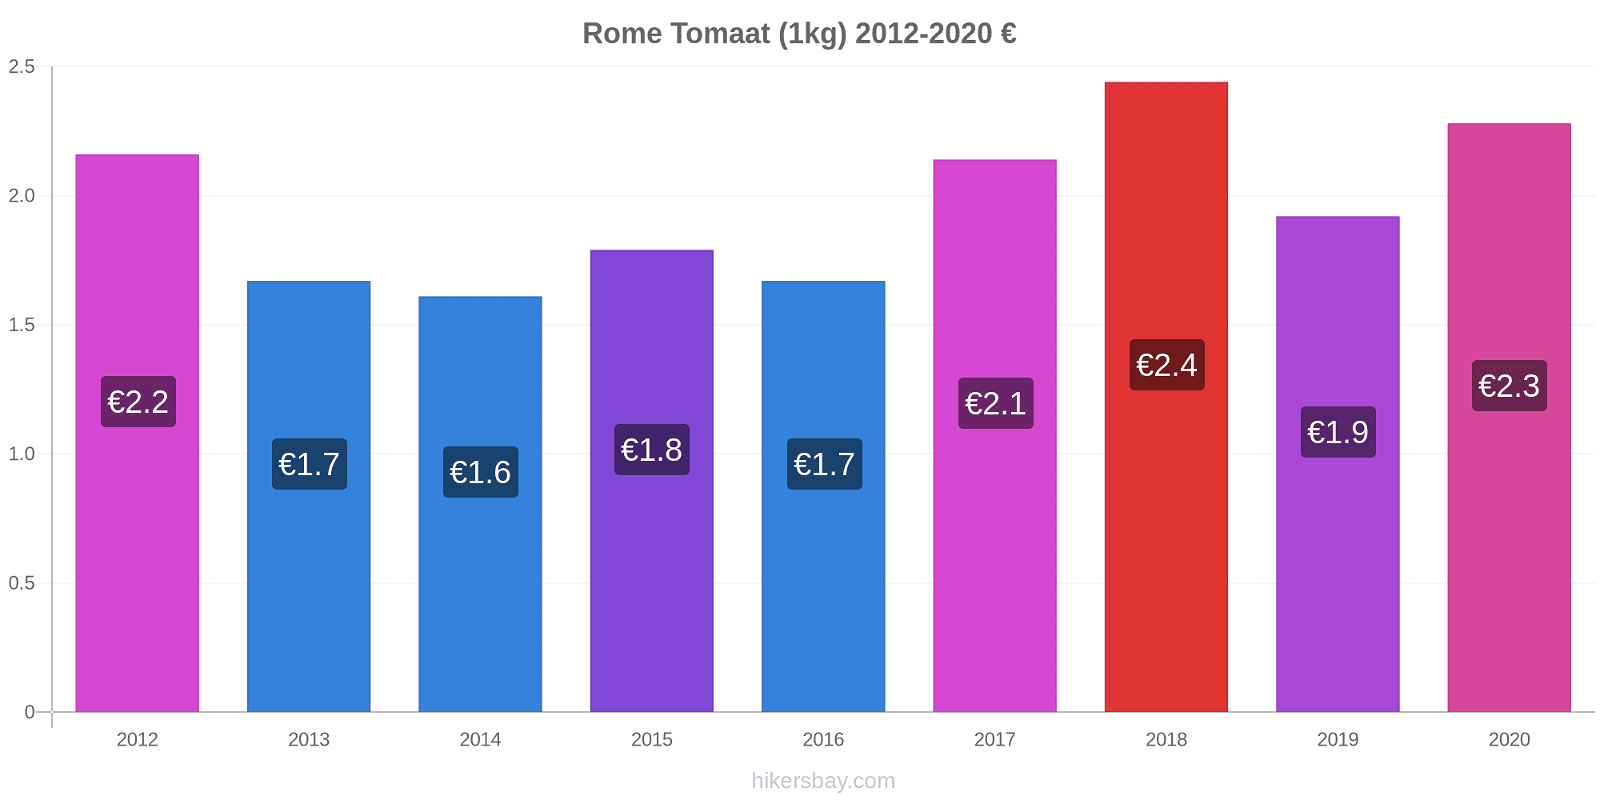 Rome prijswijzigingen Tomaat (1kg) hikersbay.com